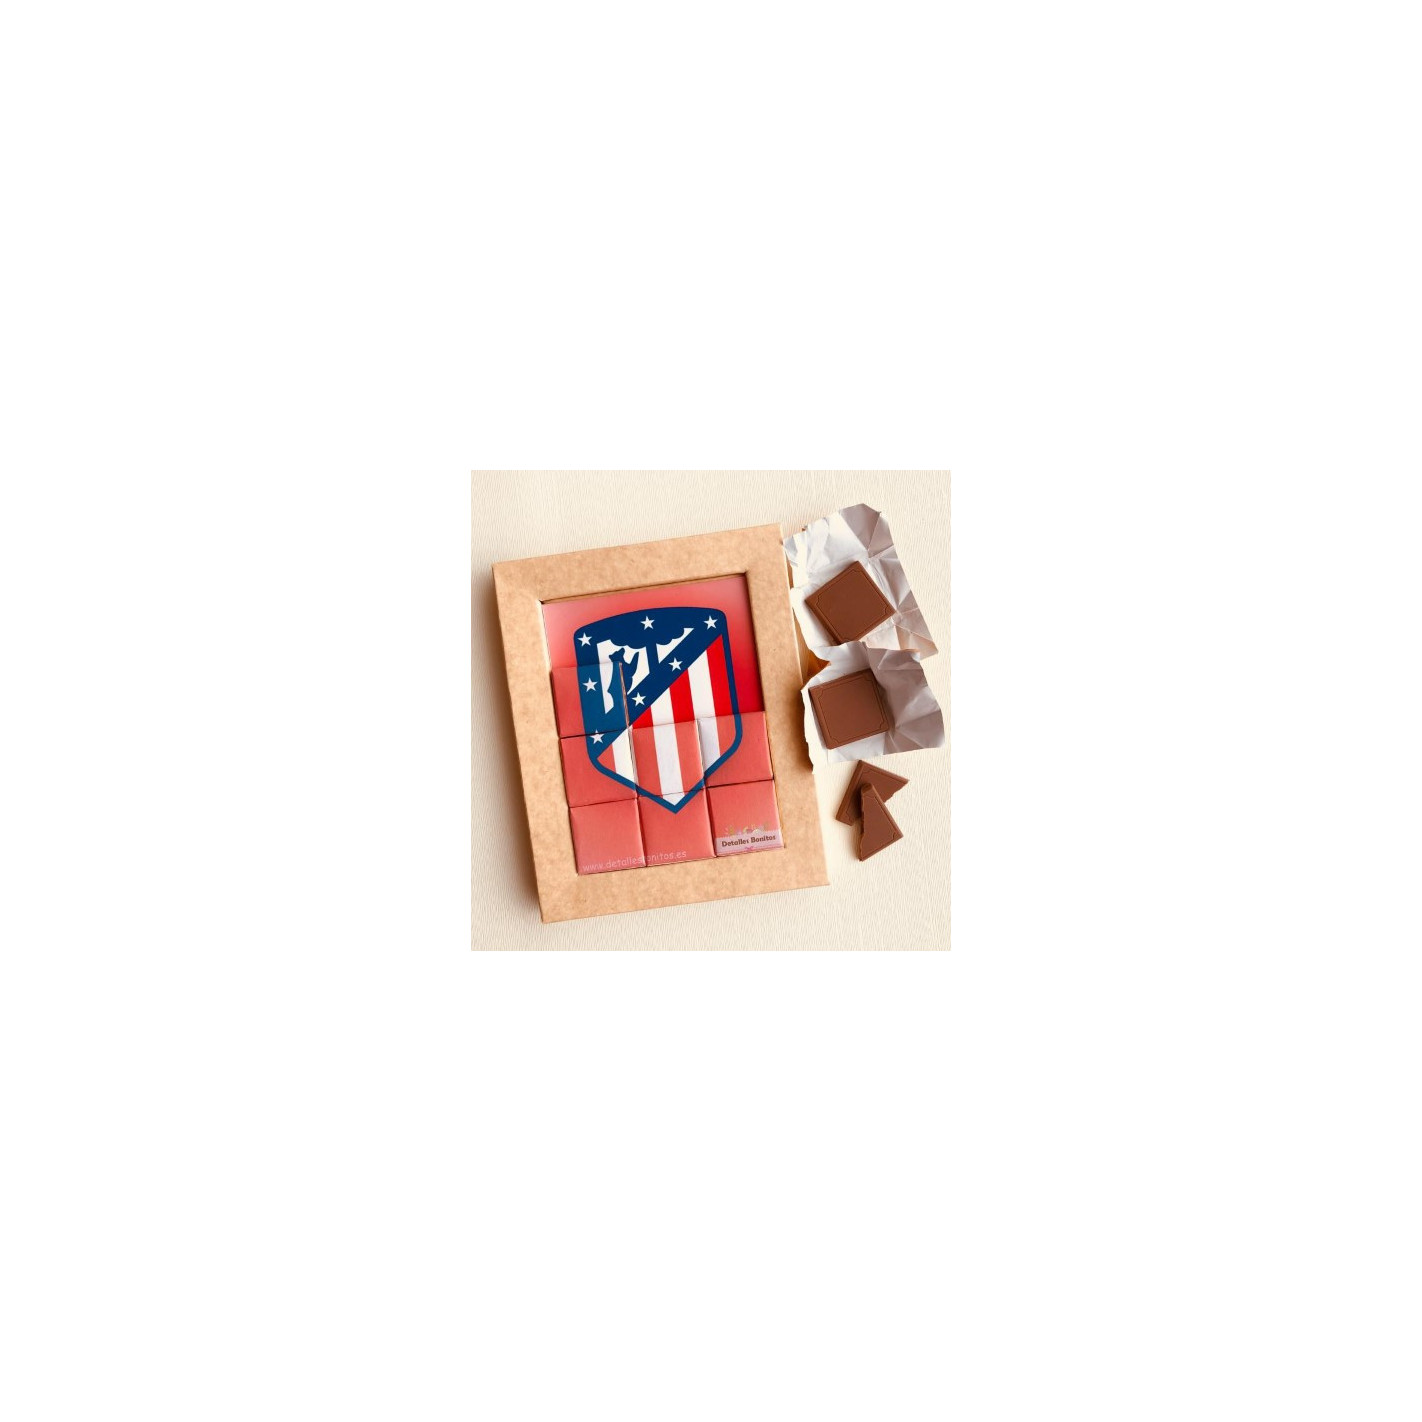 Puzzle de chocolate del escudo del Atlético de Madrid.